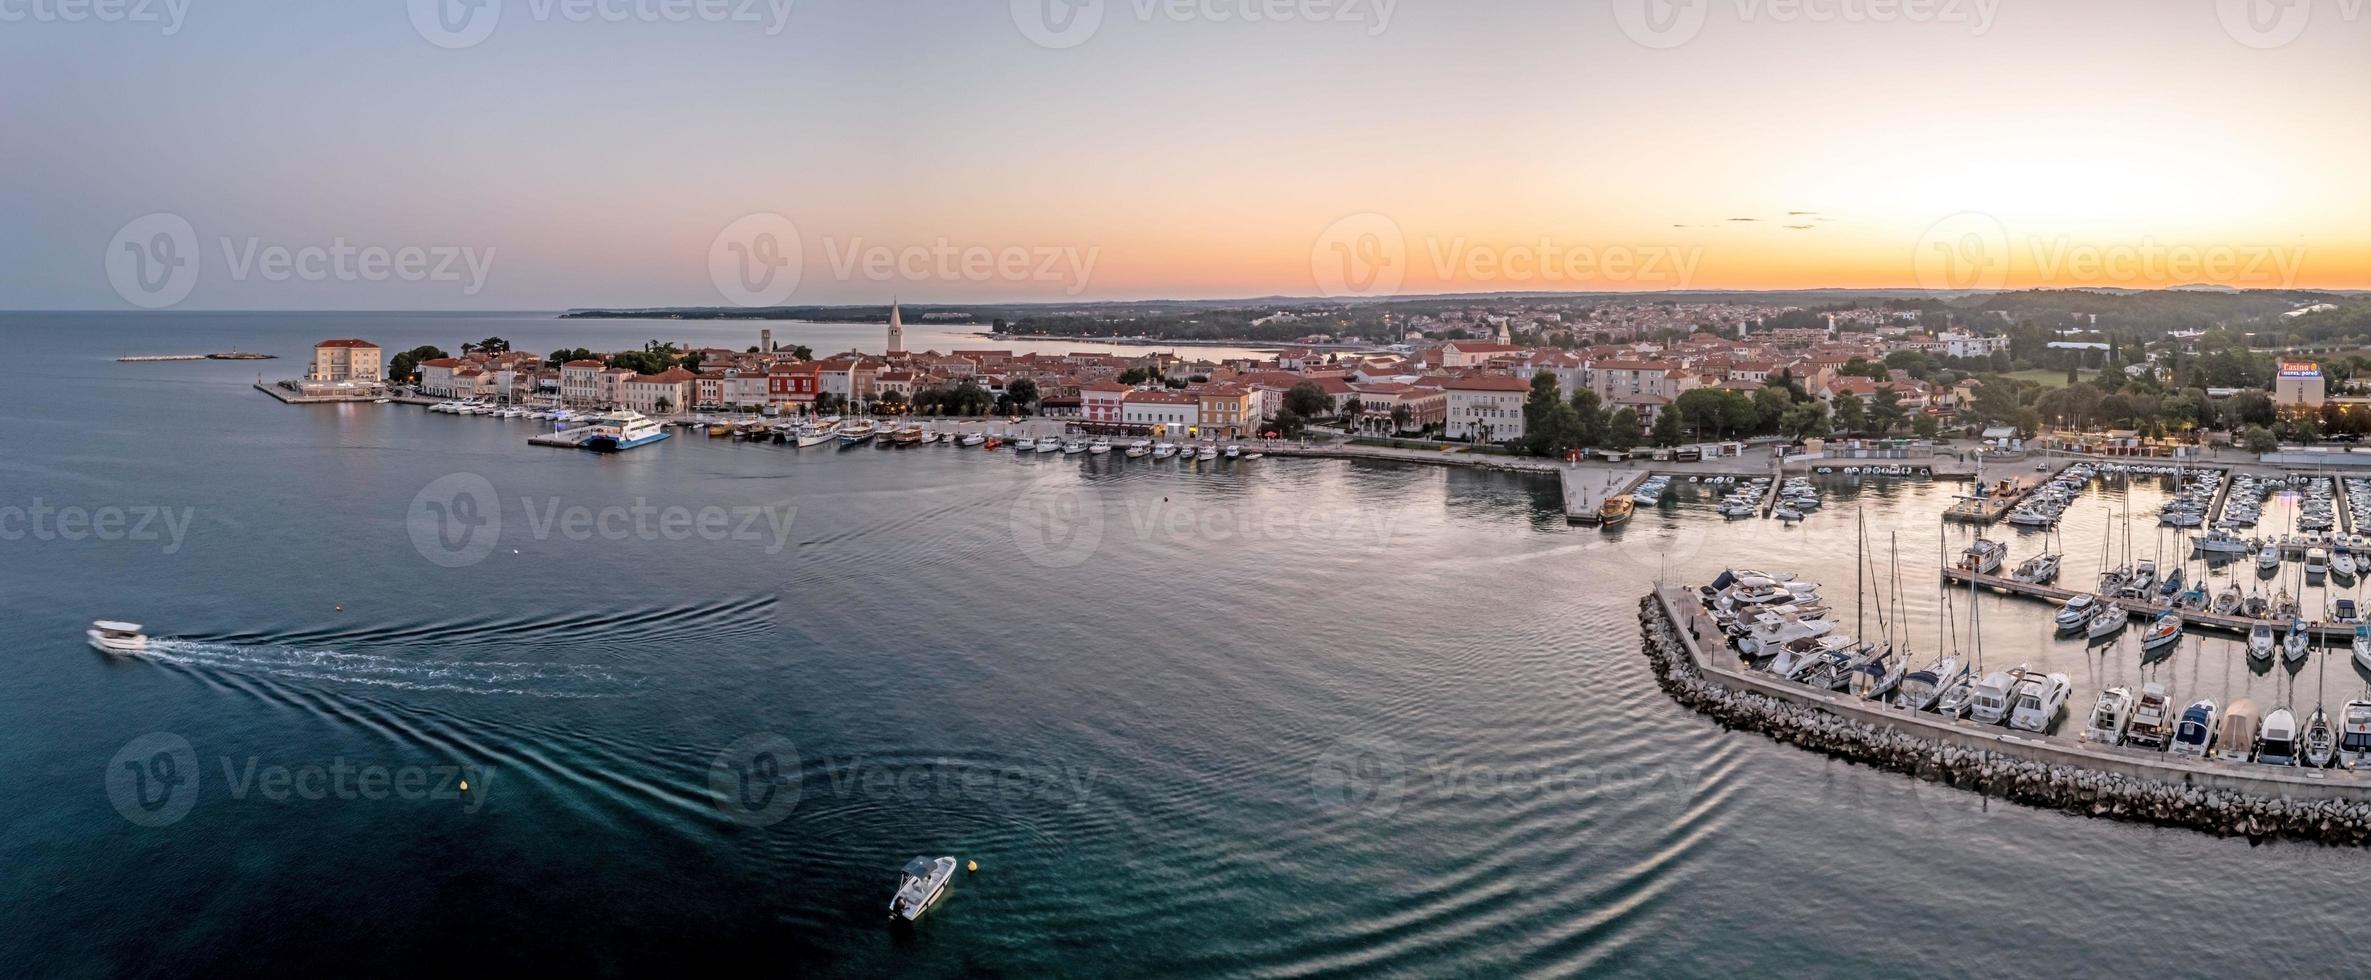 dar panorama van Kroatisch kust- stad- porec met haven en promenade gedurende zonsopkomst foto